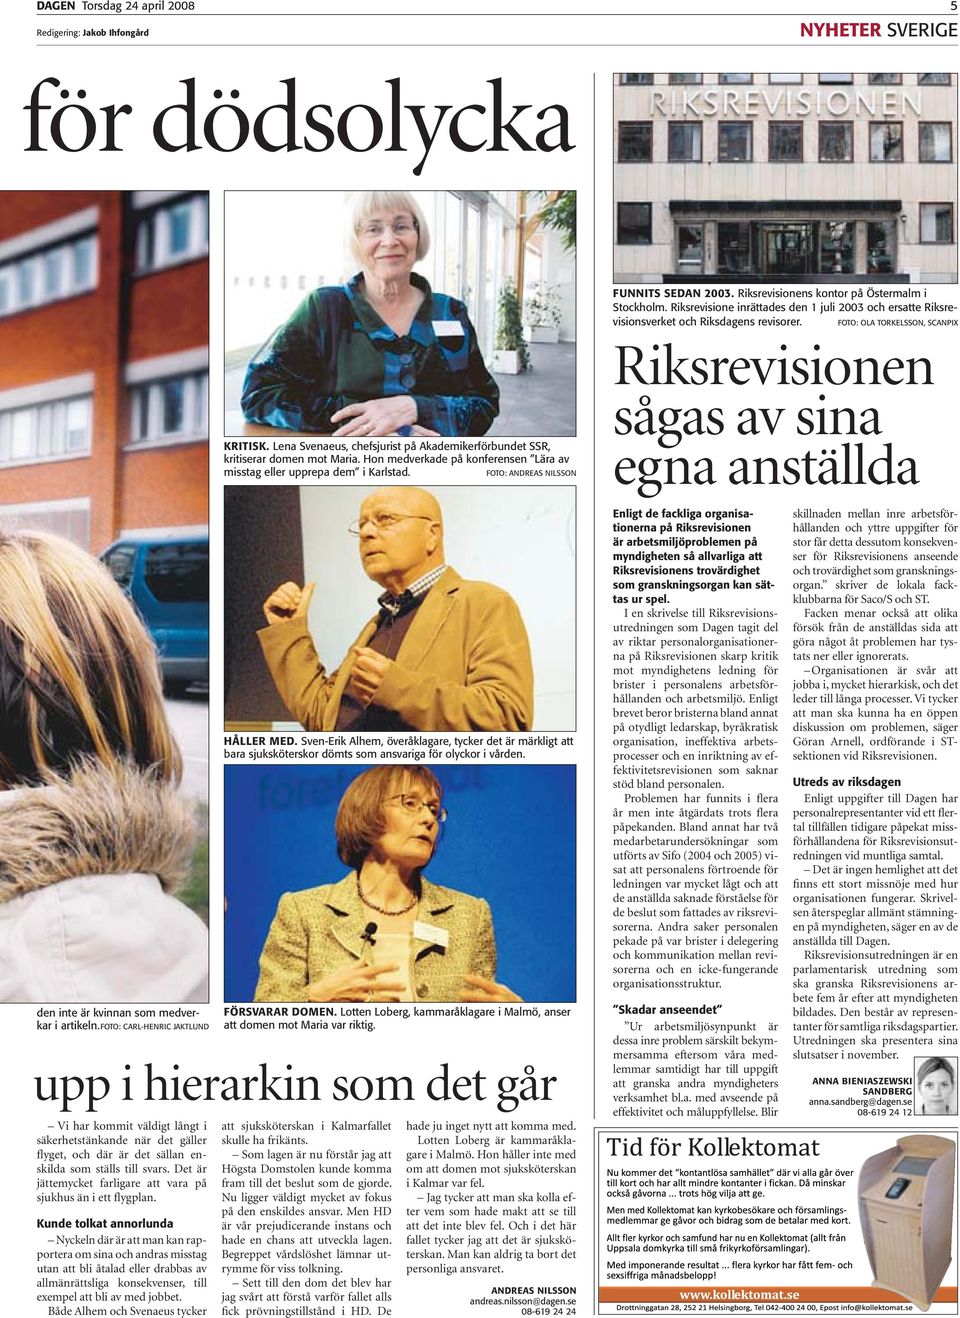 Lena Svenaeus, chefsjurist på Akademikerförbundet SSR, kritiserar domen mot Maria. Hon medverkade på konferensen Lära av misstag eller upprepa dem i Karlstad.